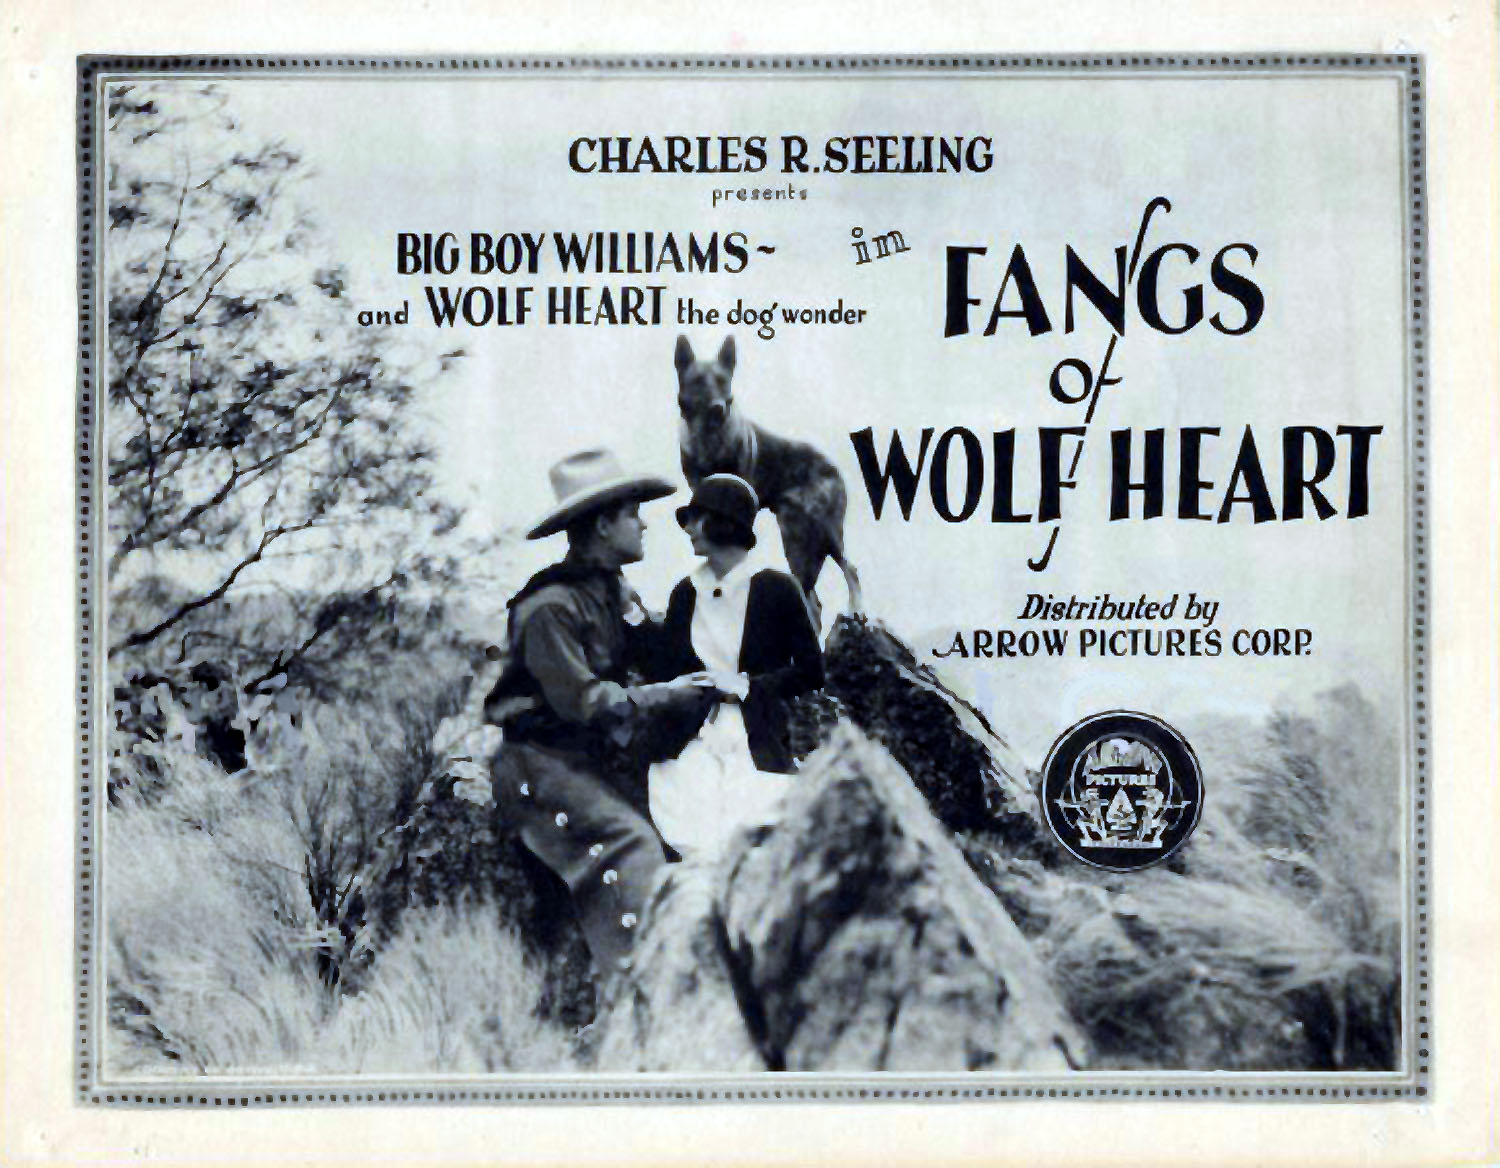 FANGS OF WOLFHEART